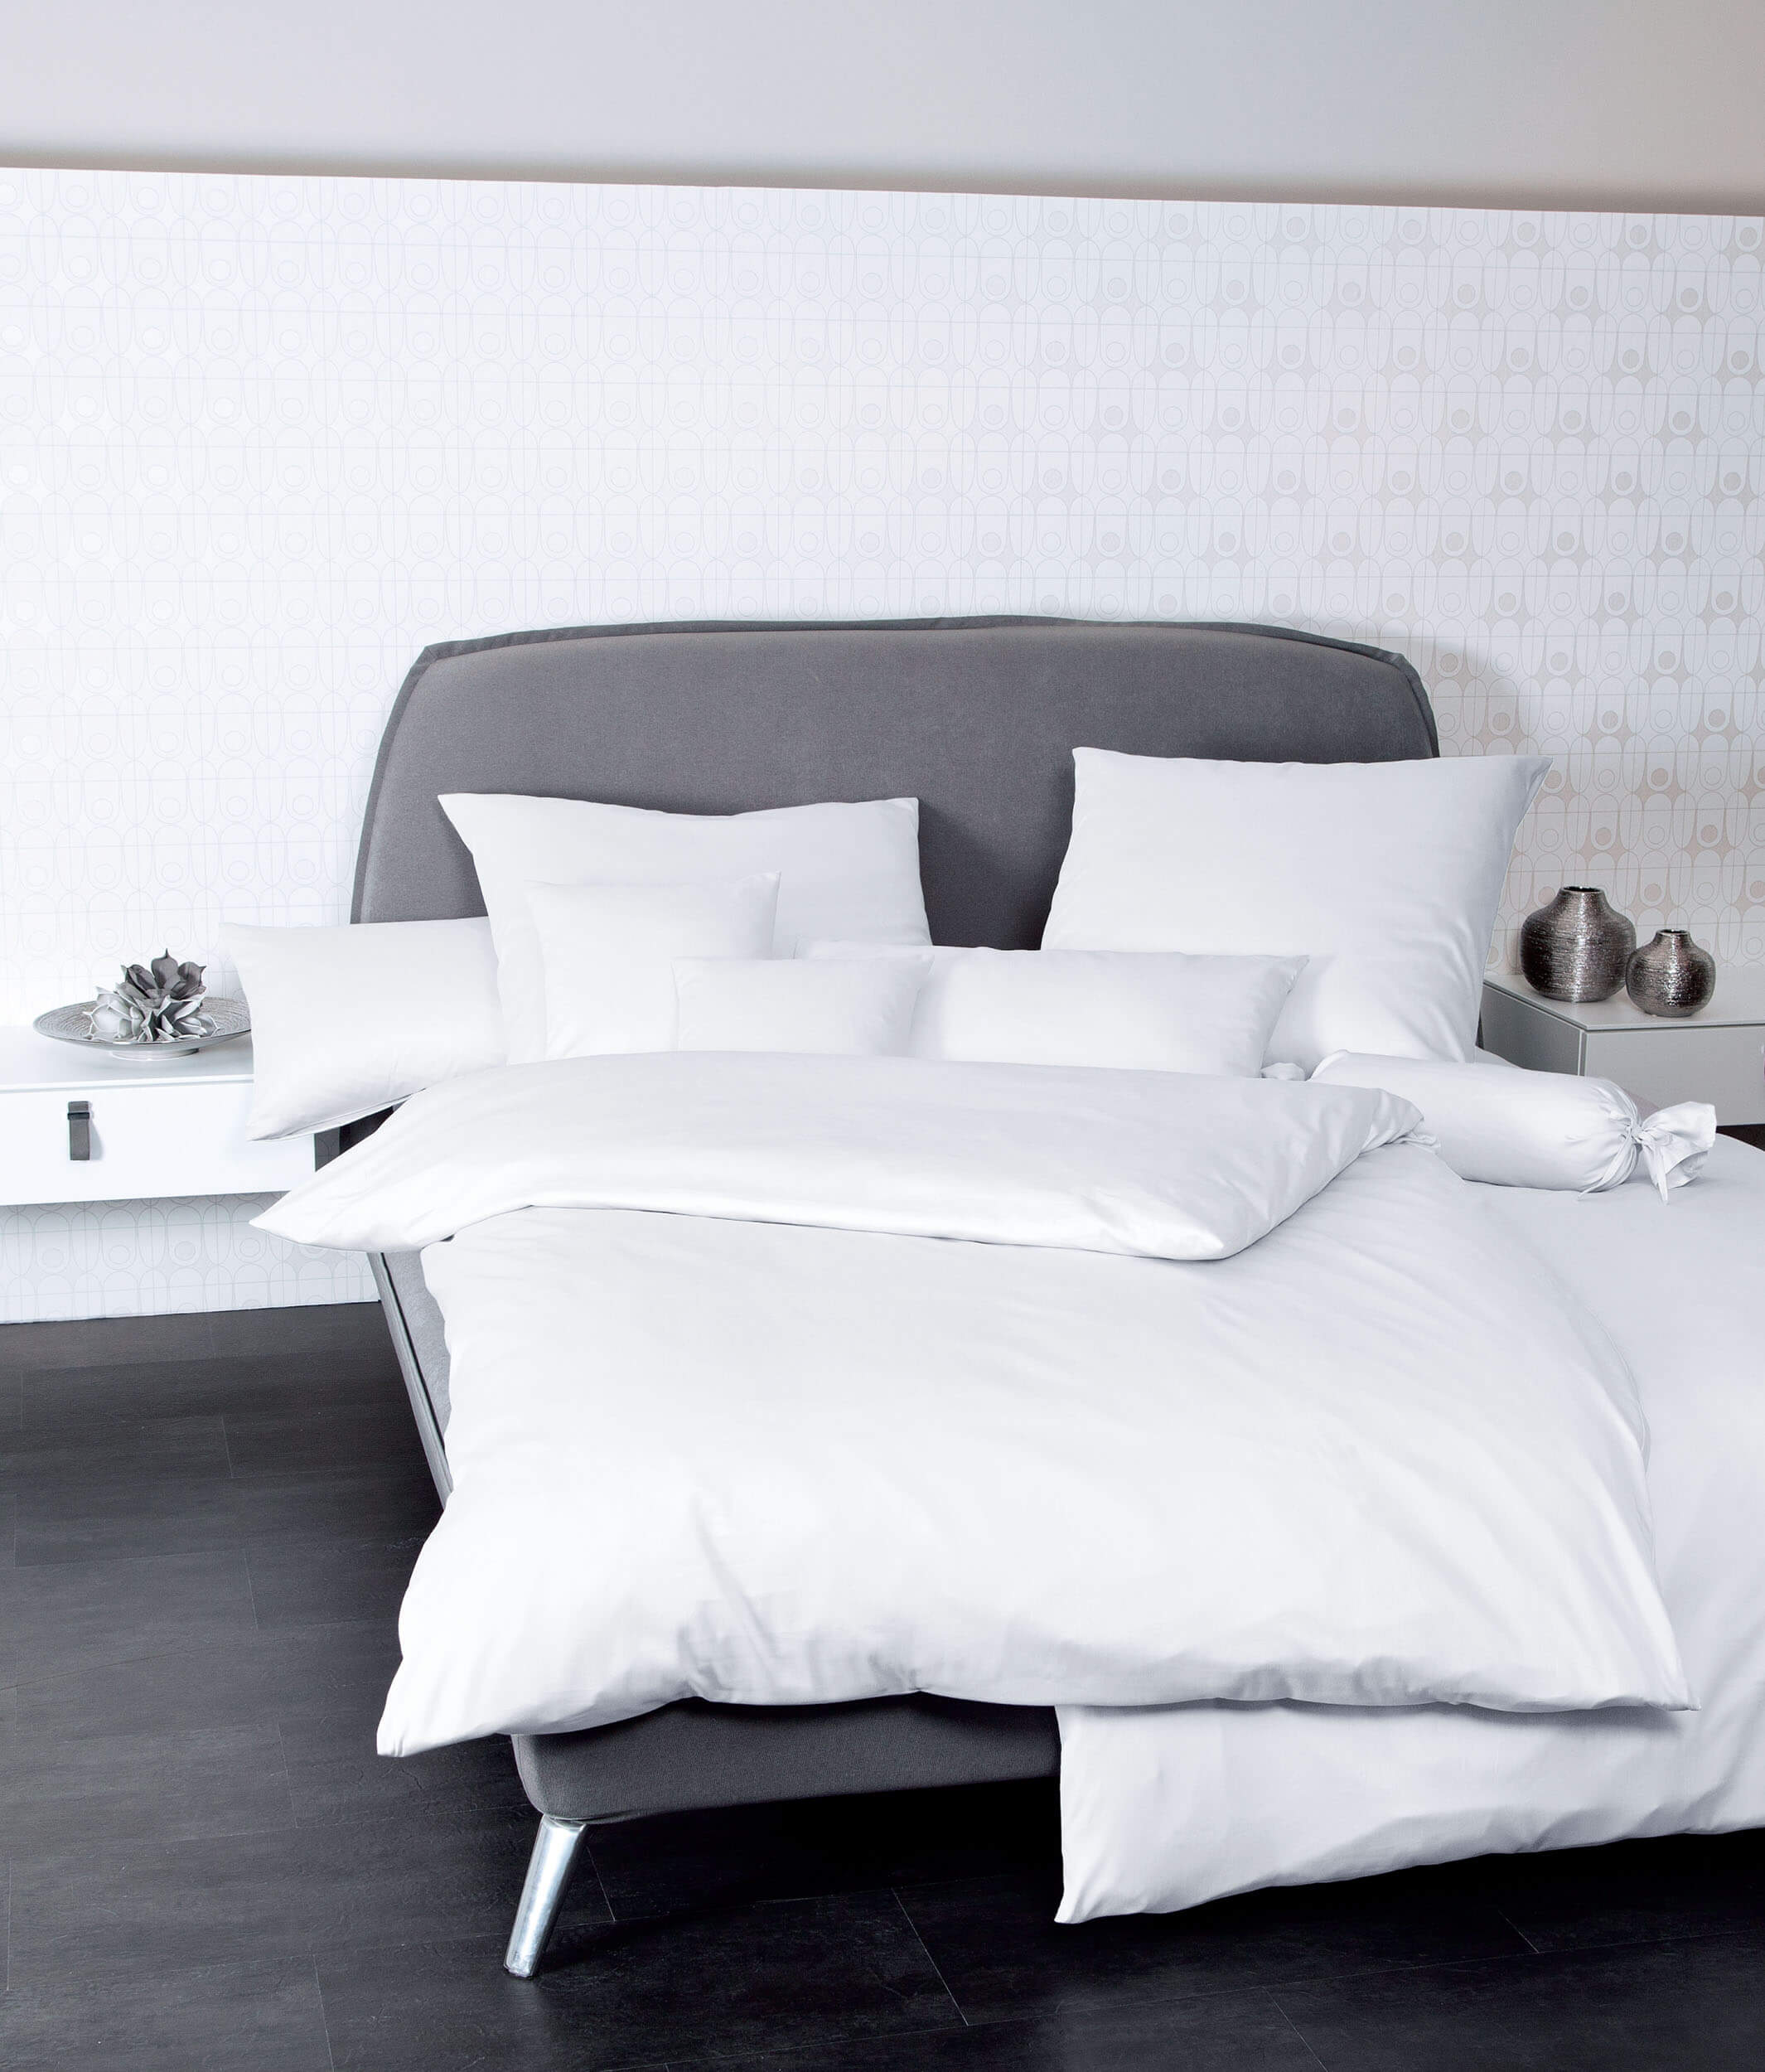 Белое постельное белье Colors Weib ☞ Размер пододеяльника: 155 x 200 см ☞ Размер простыни: Без простыни ☞ Размер наволочек: 50 x 70 см (1 шт.)